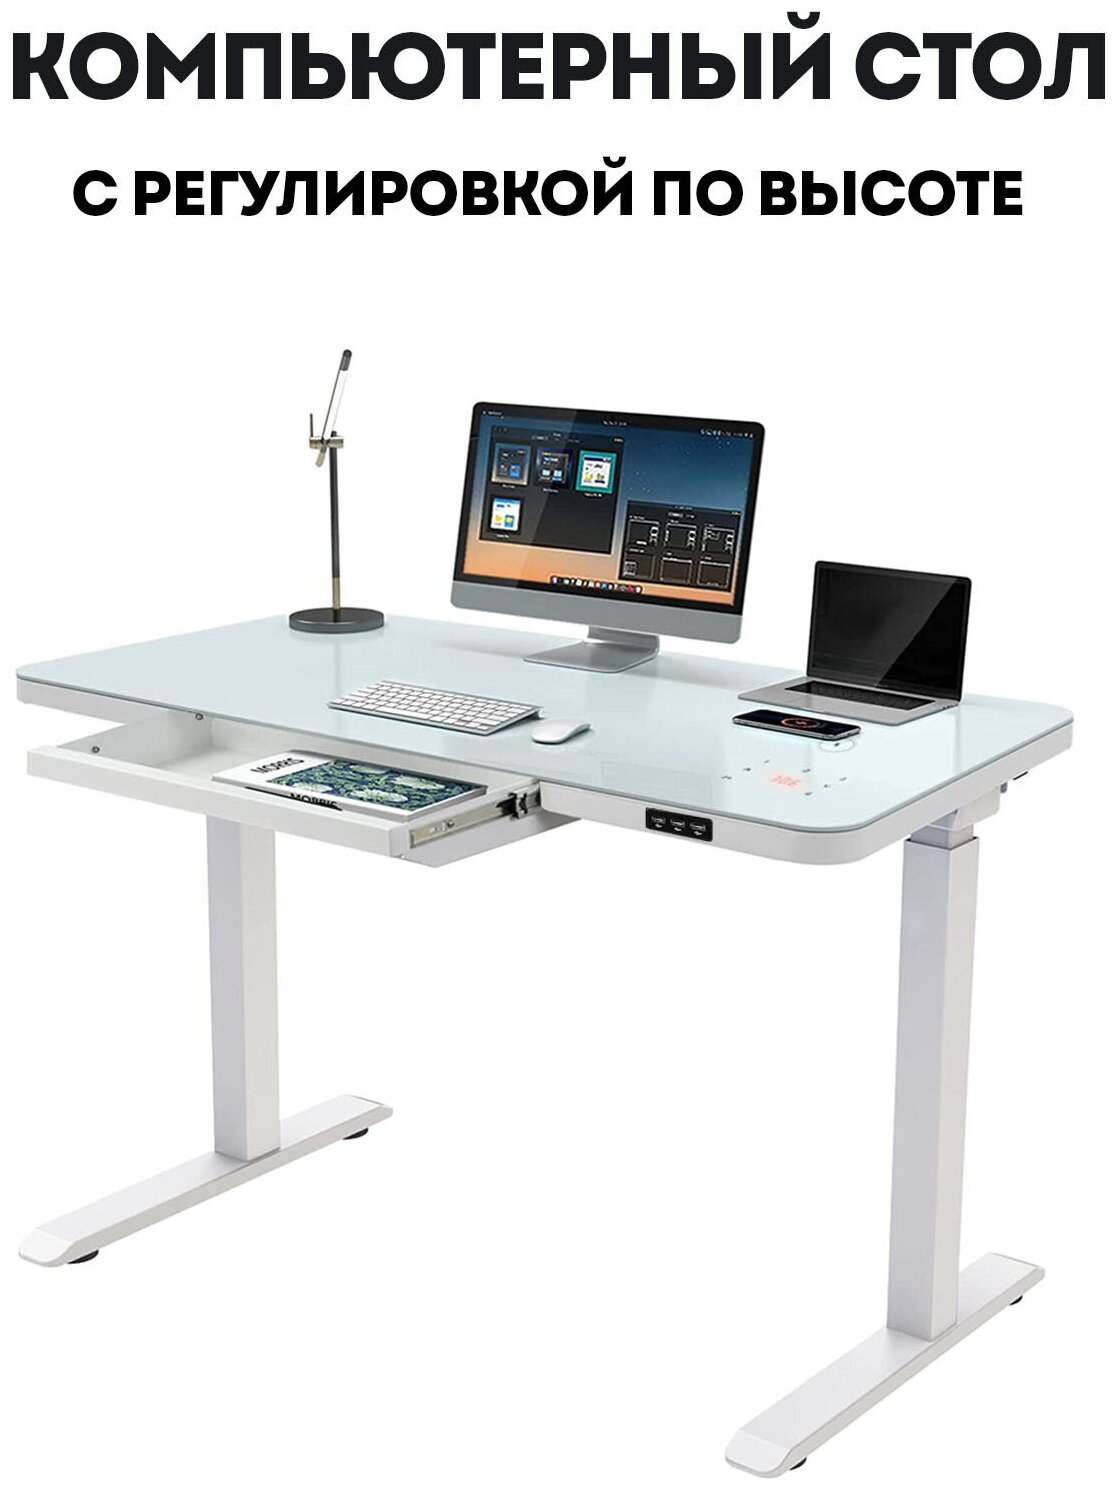 Письменный стол белый PROtect с регулировкой по высоте, столешница стекло 120x60x6 см, белое подстолье E4A, USB, Type-C